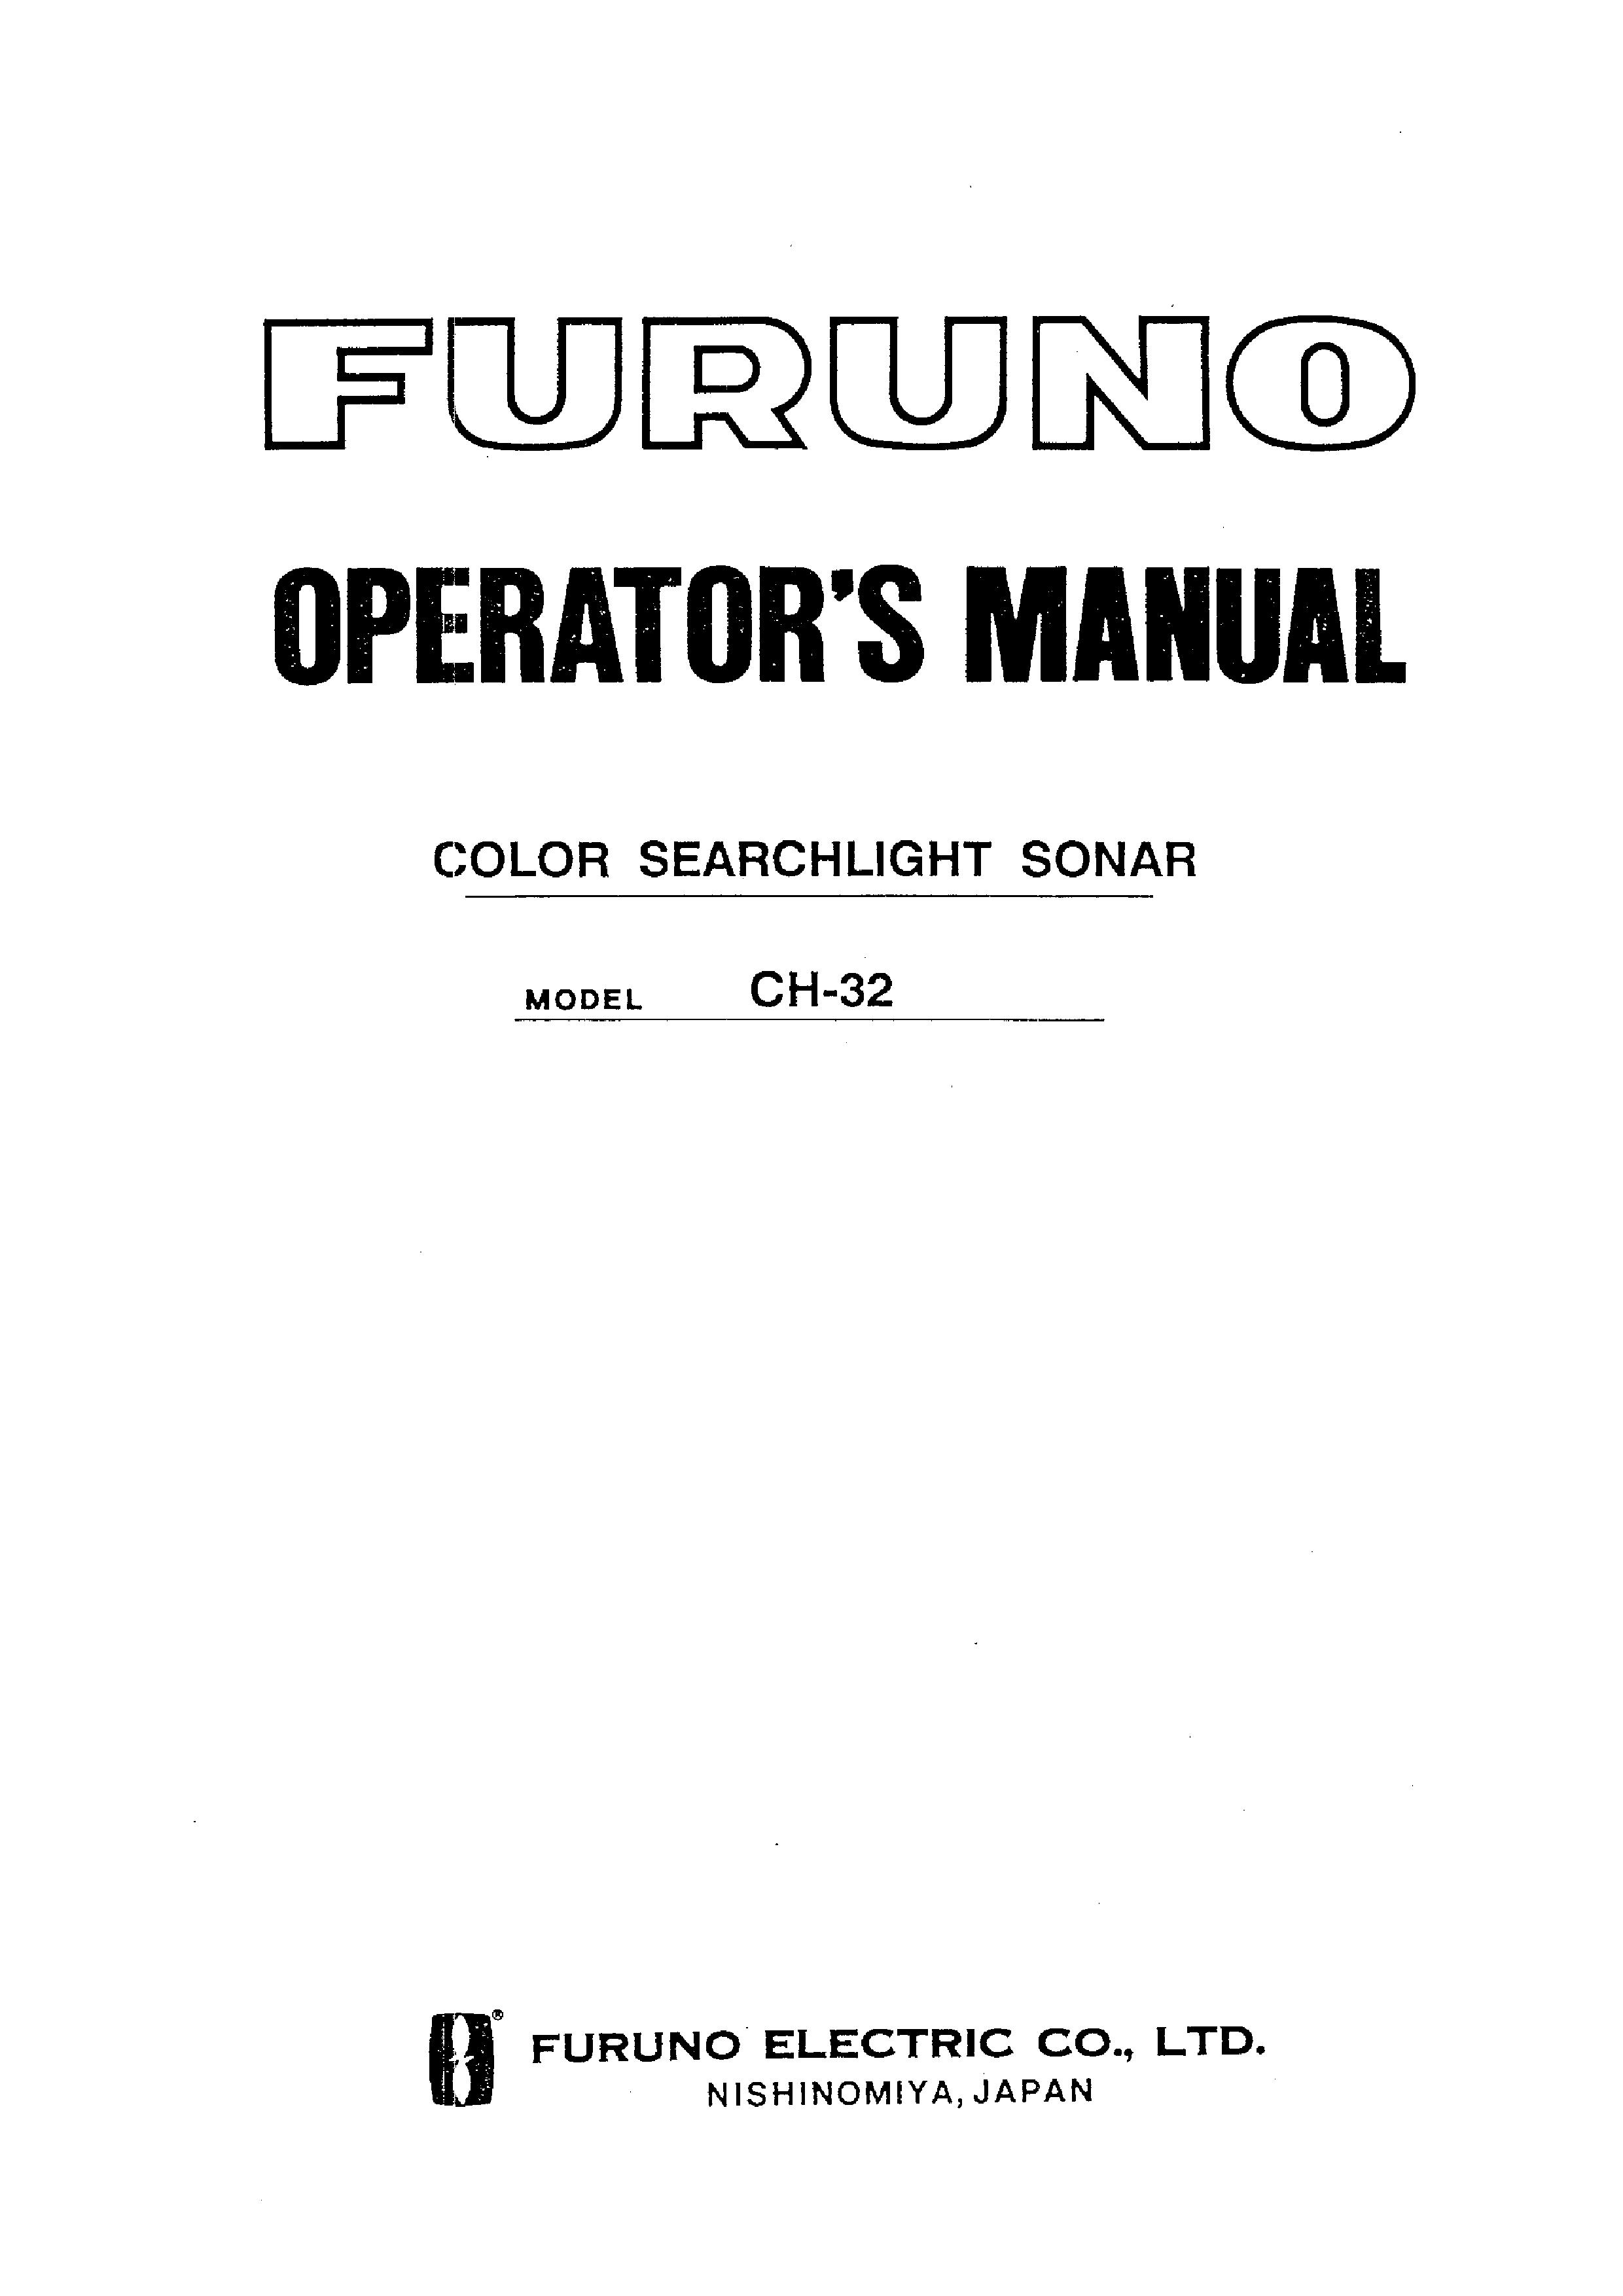 Furuno CH-32 SONAR User Manual